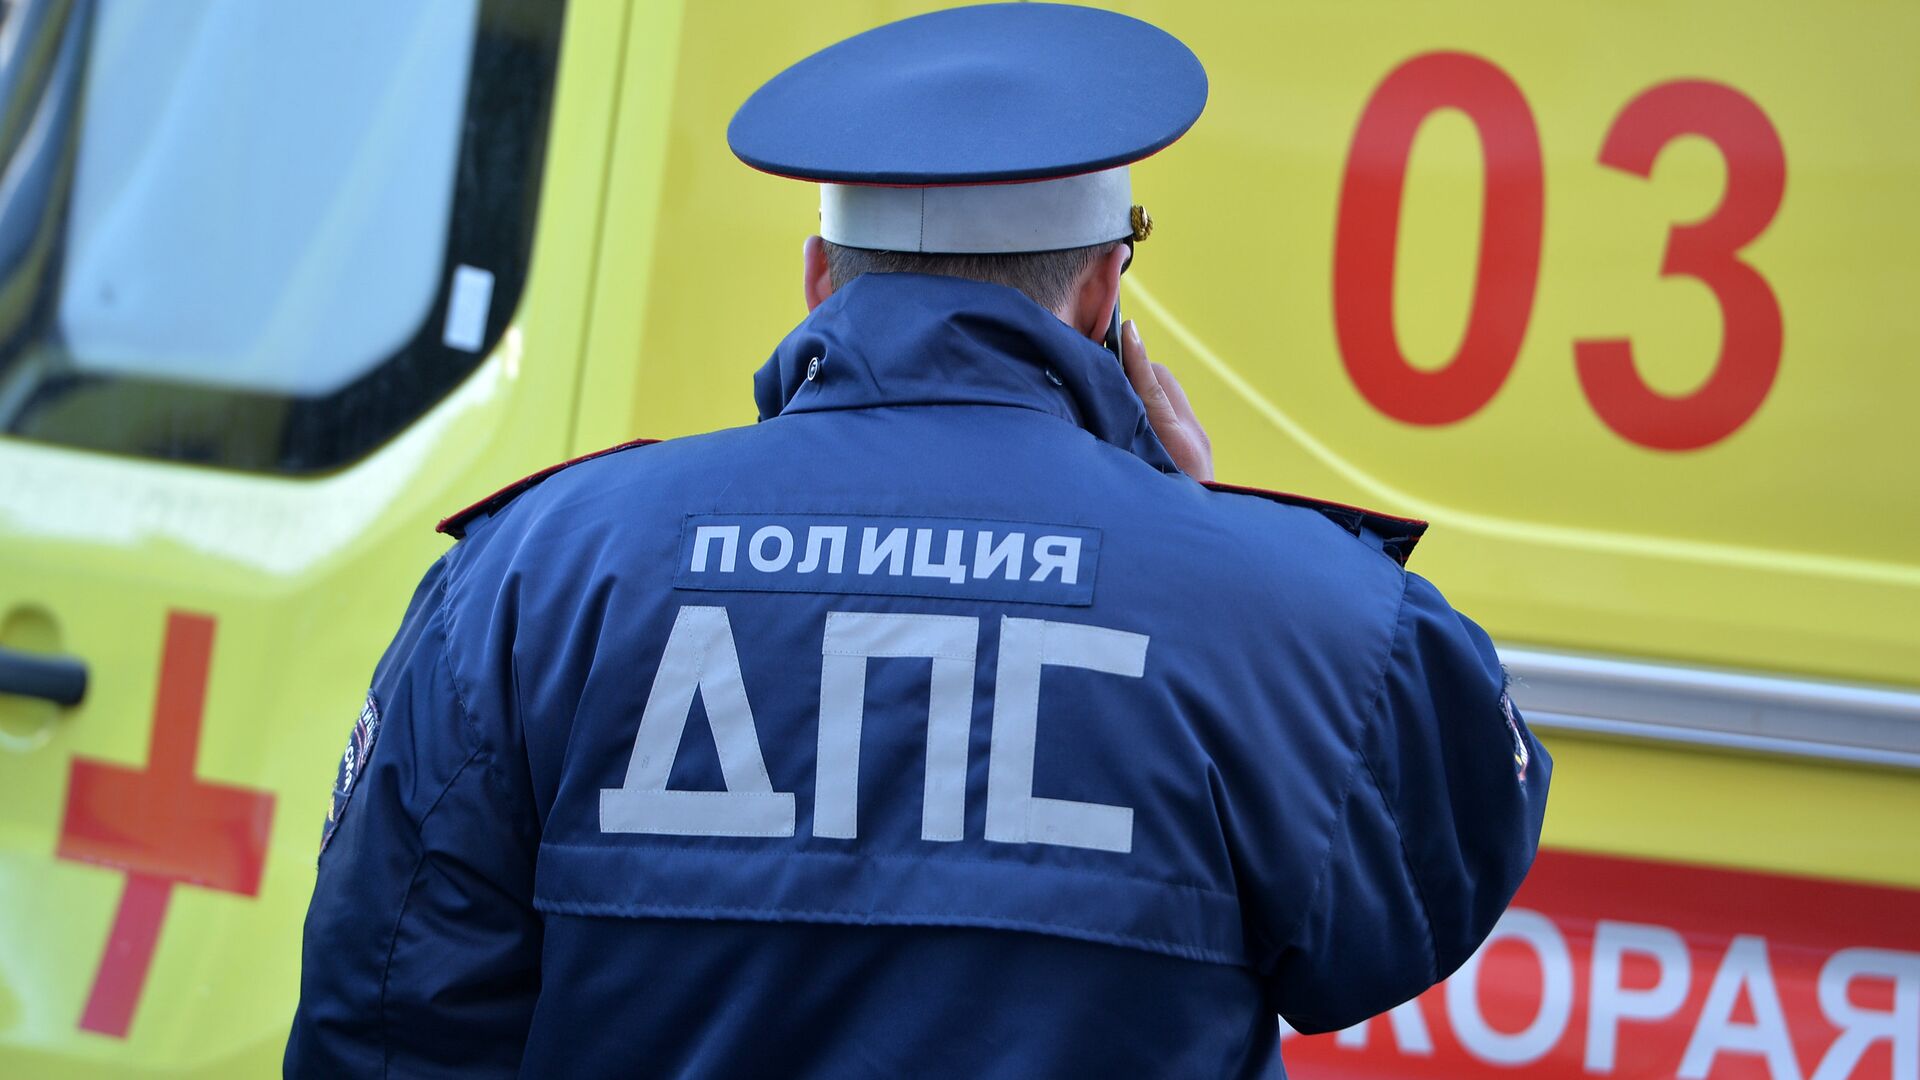 Один человек пострадал в аварии с участием трех автомобилей на проспекте Андропова